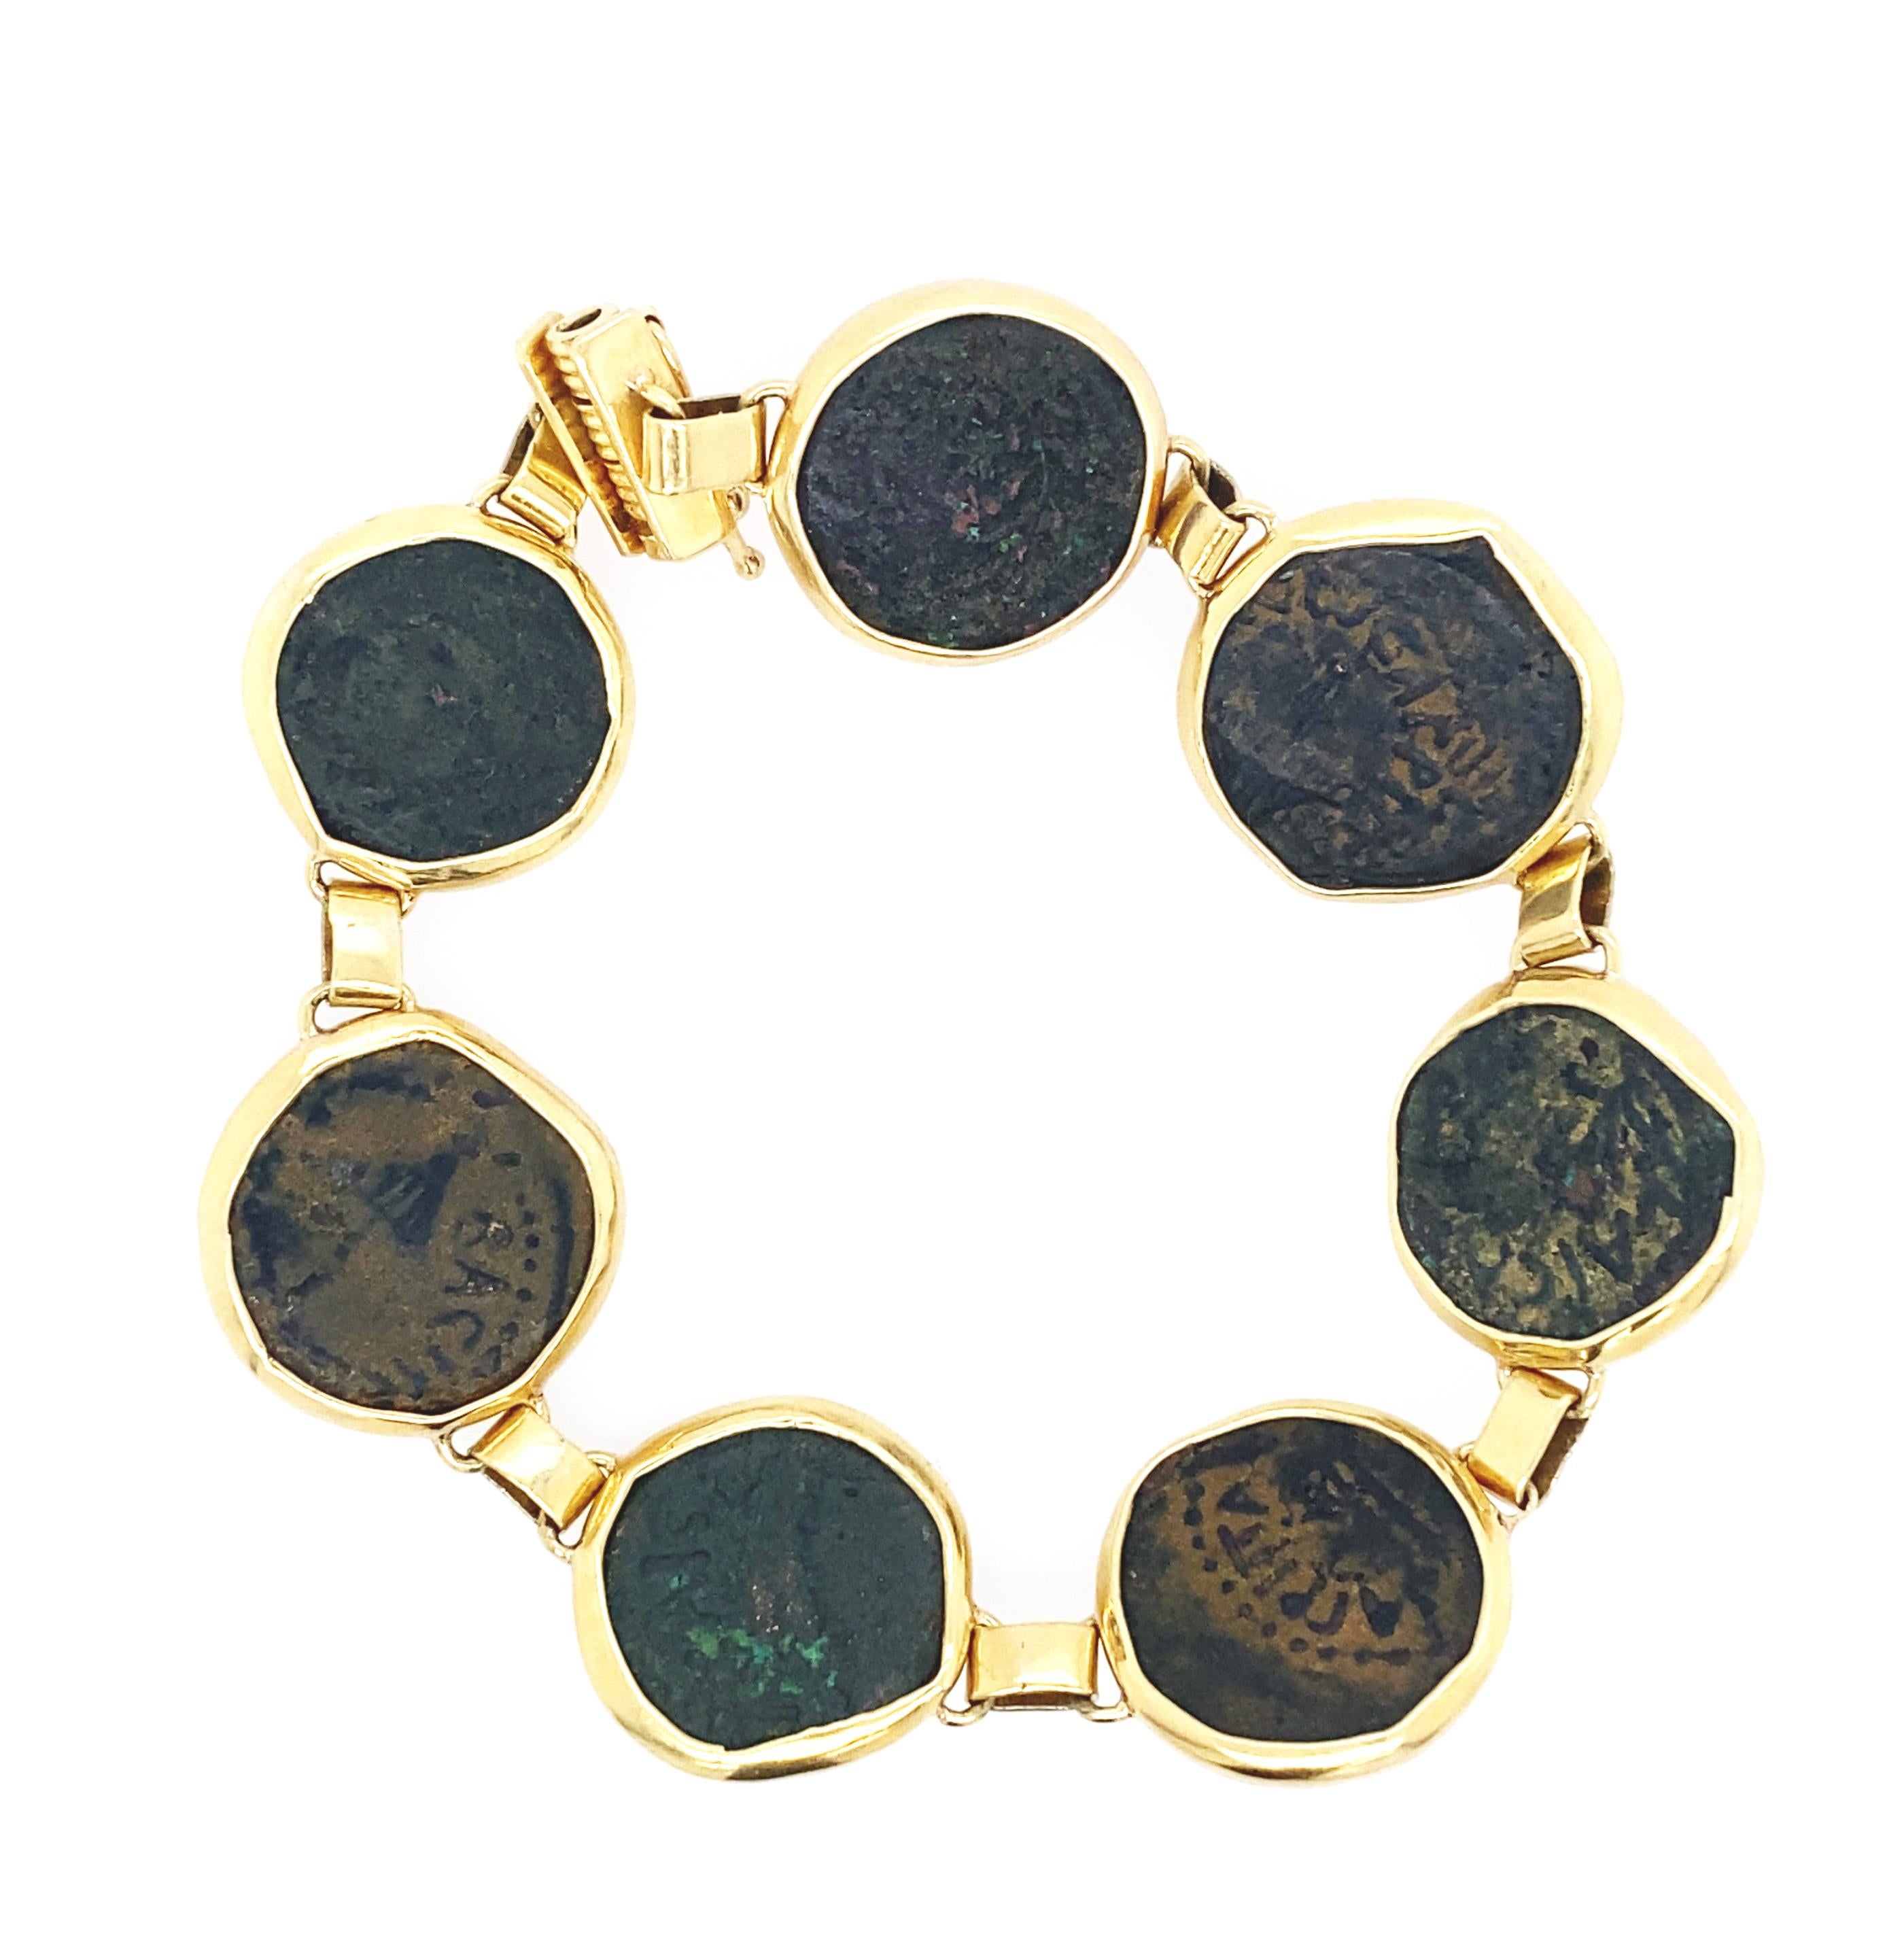 gold coin bracelet designs